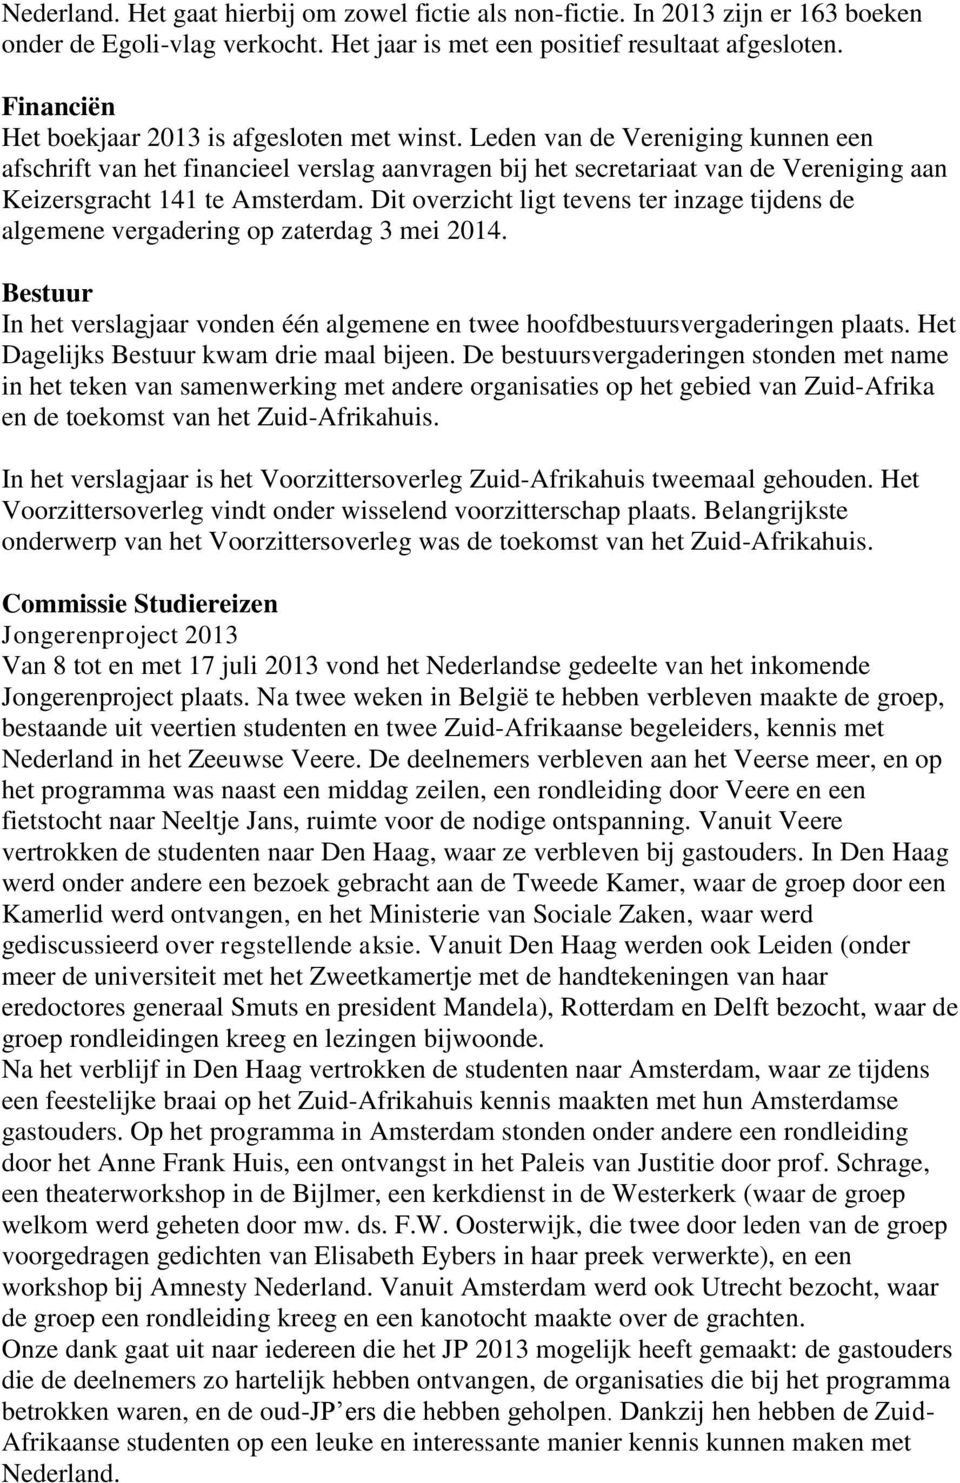 Leden van de Vereniging kunnen een afschrift van het financieel verslag aanvragen bij het secretariaat van de Vereniging aan Keizersgracht 141 te Amsterdam.